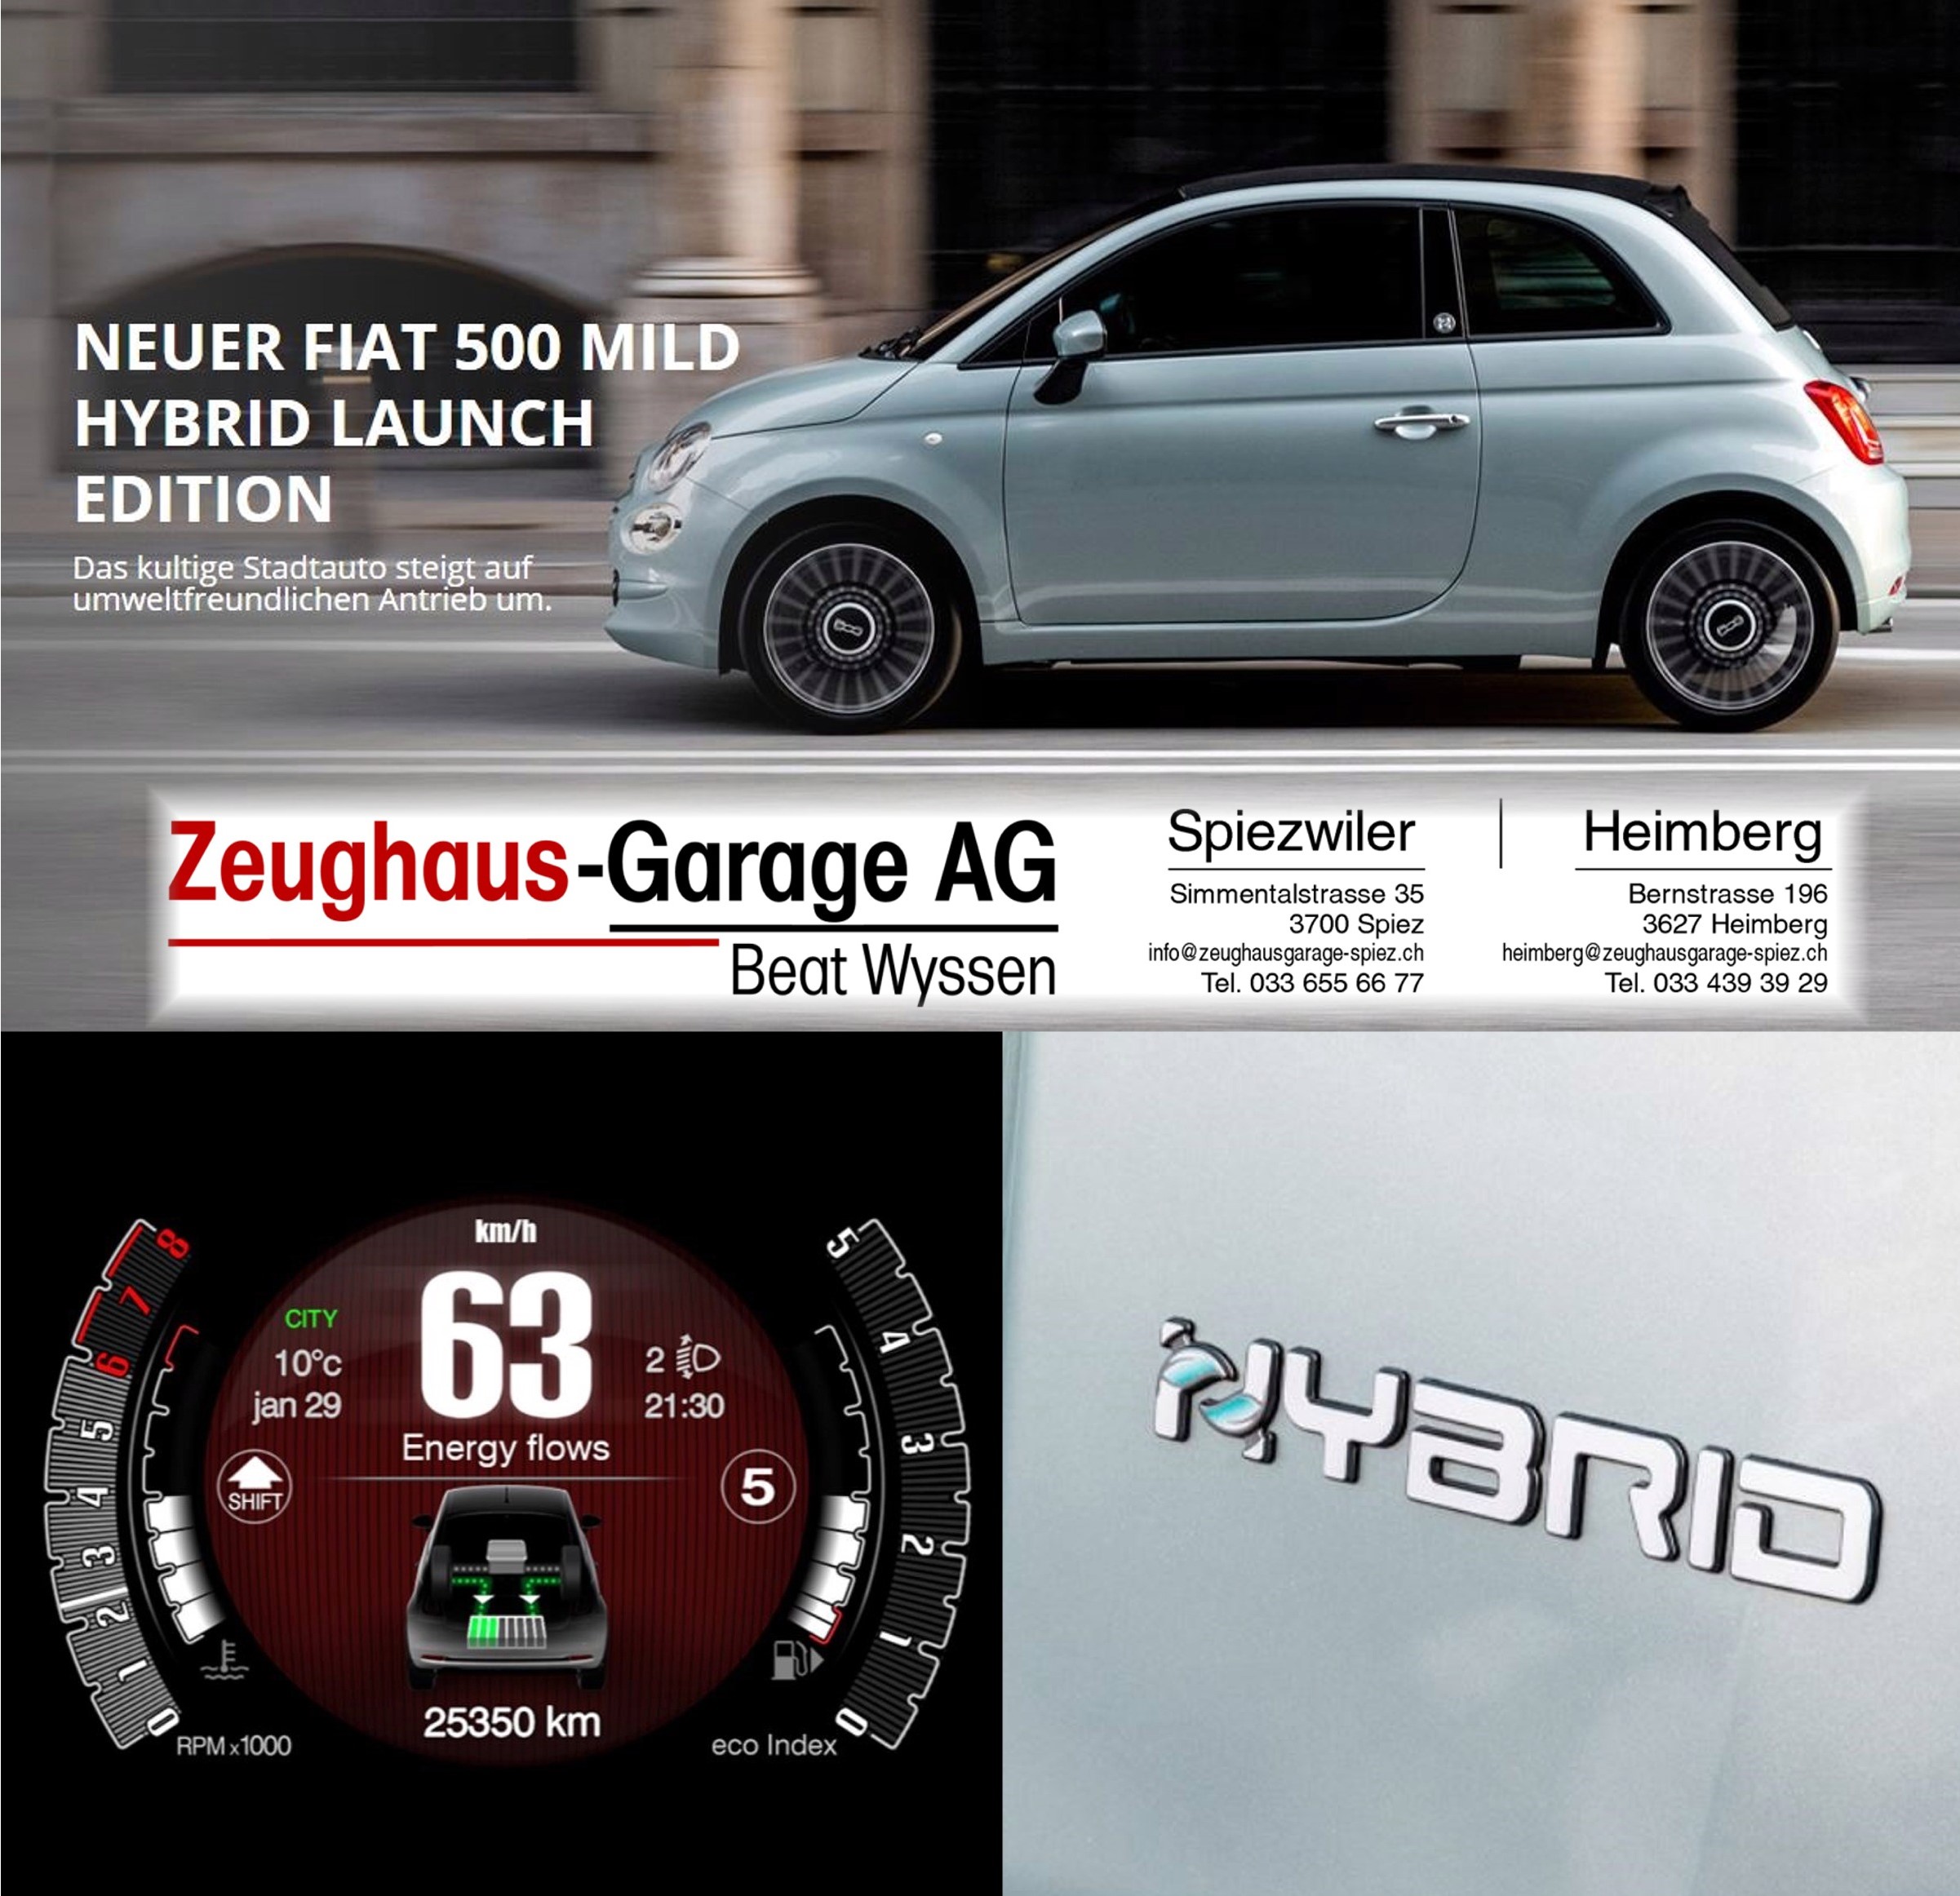 https://zeughausgarage-spiez.ch/zhg/wp-content/uploads/2020/02/Inserat-Hybrid-Fiat-500.jpg